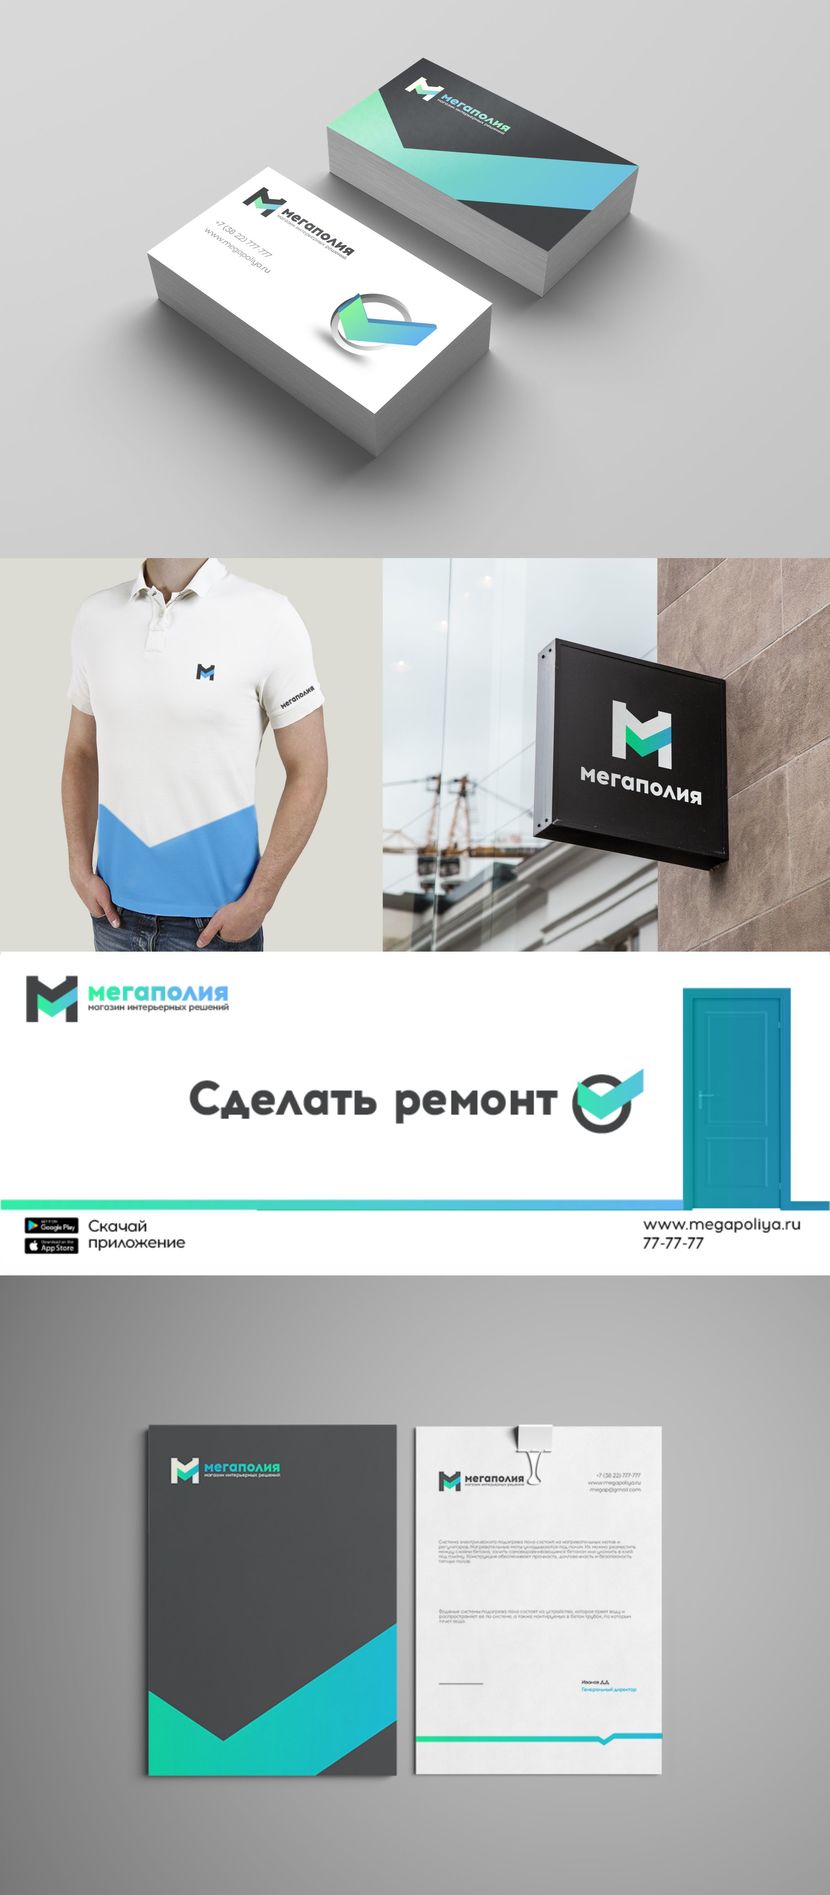 Презентация фирменных элементов - Разработка логотипа и фирменного стиля для интернет-магазина отделочных материалов